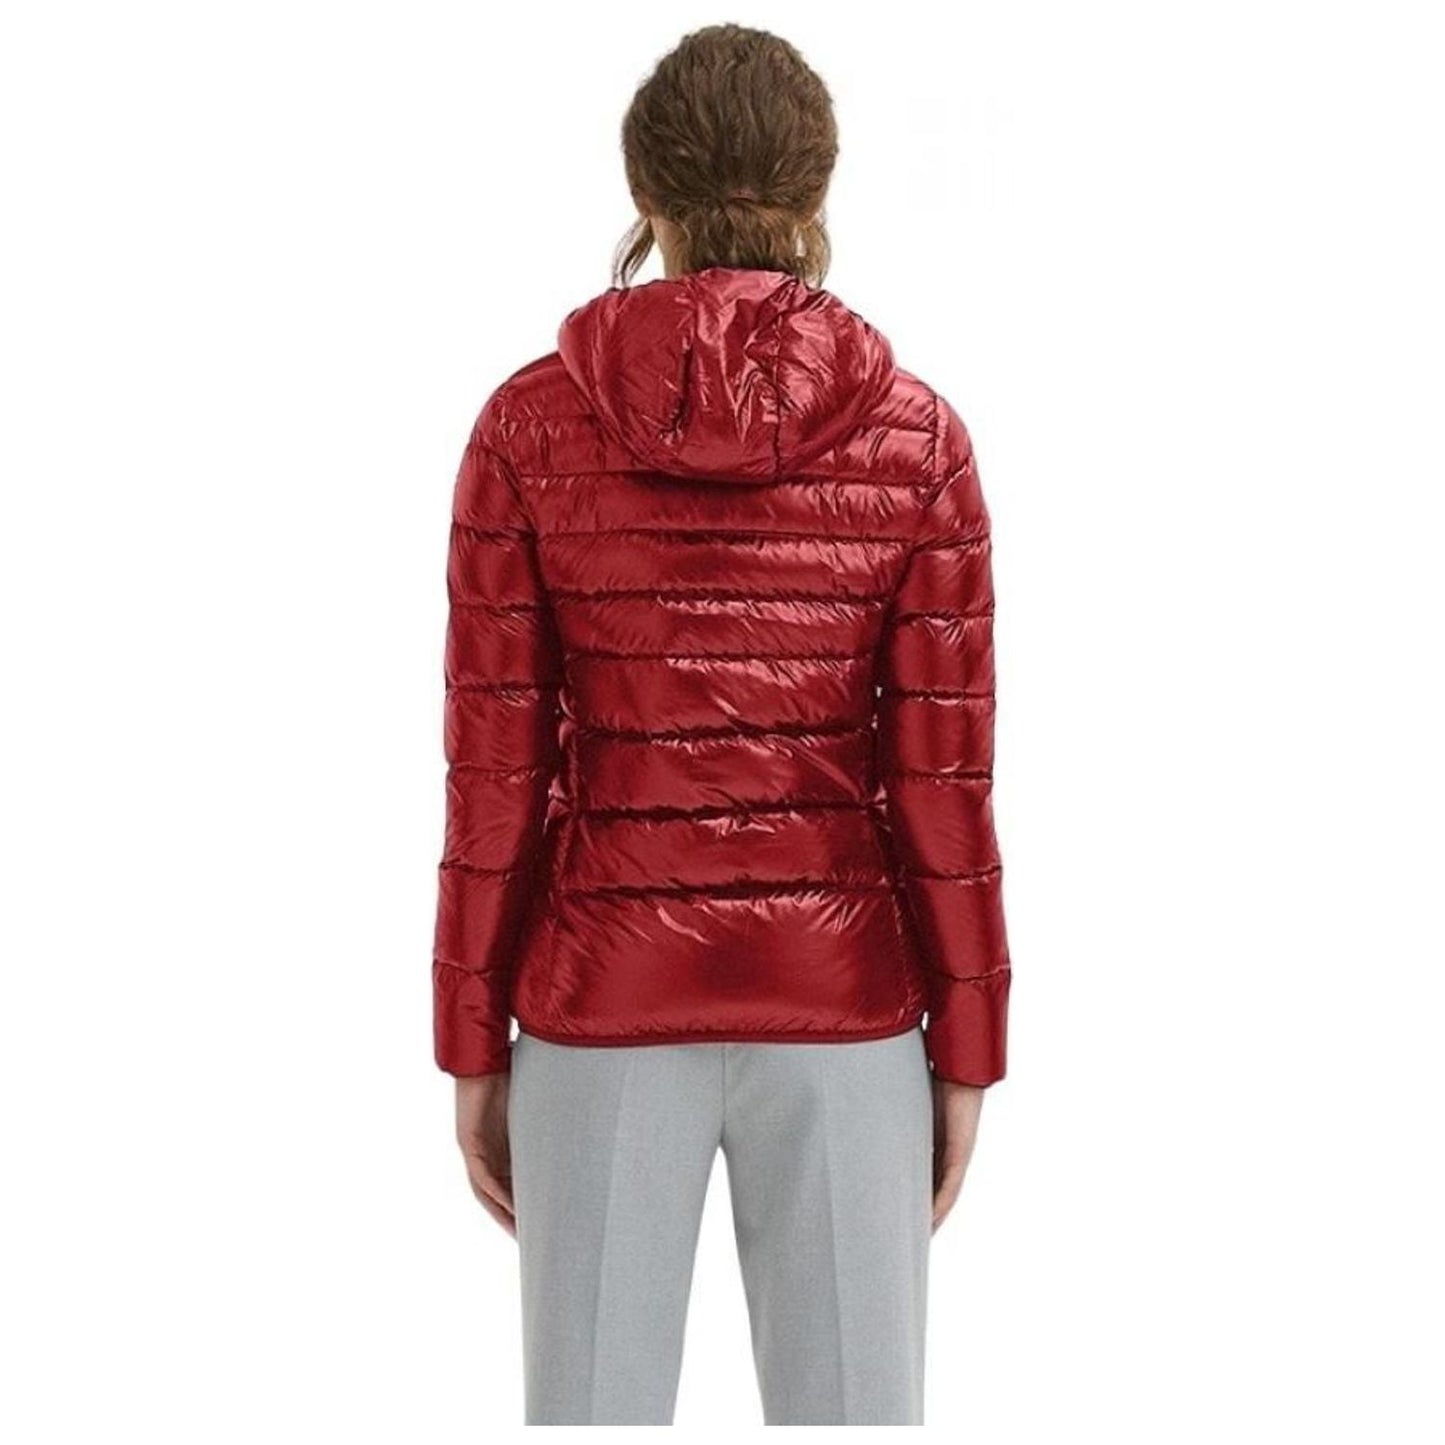 Centogrammi Elegant Ultra Light Hooded Down Jacket red-nylon-jackets-coat-2 product-8591-1972373106-6efa1af1-1c7.jpg